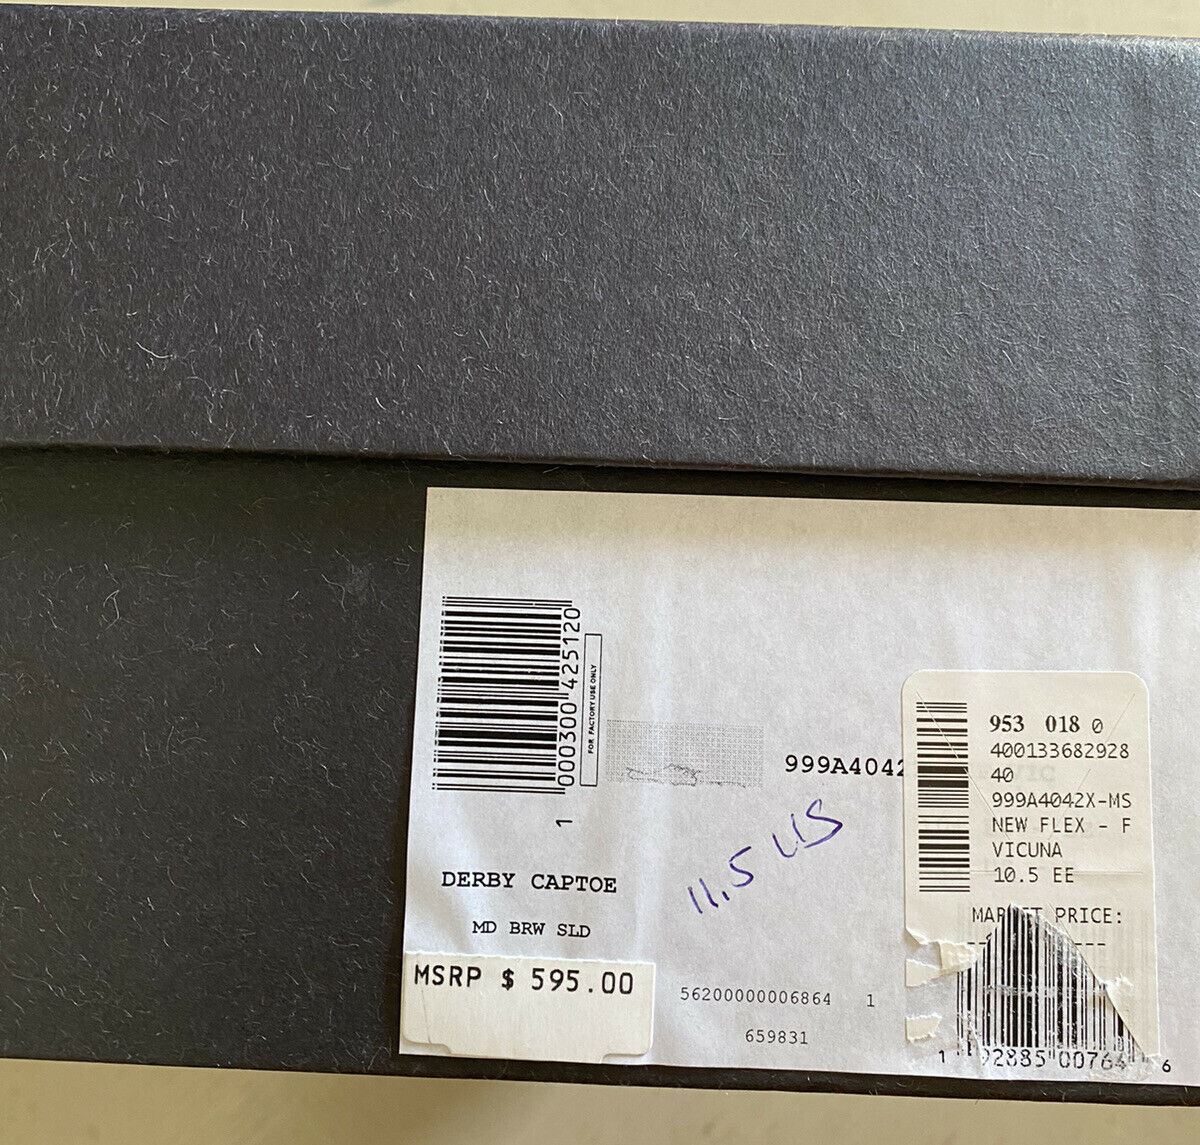 Neue 595 $ Ermenegildo Zegna Oxford-Schuhe Braun 11,5 US (44,5 Eu) Italien